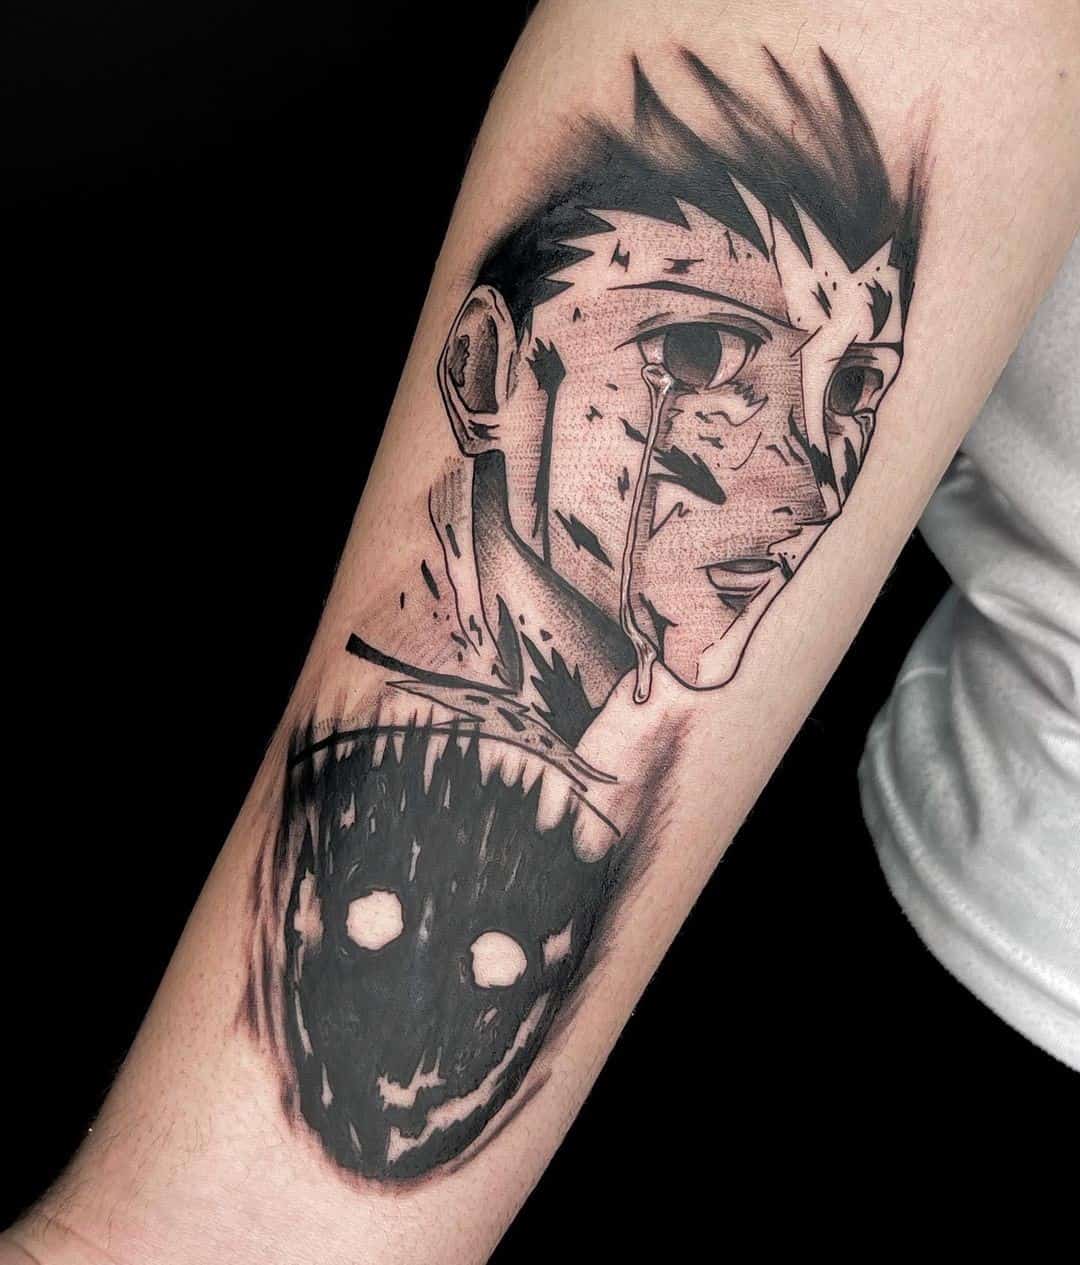 Tatuaje en el brazo, fantasma aterrador, tinta negra